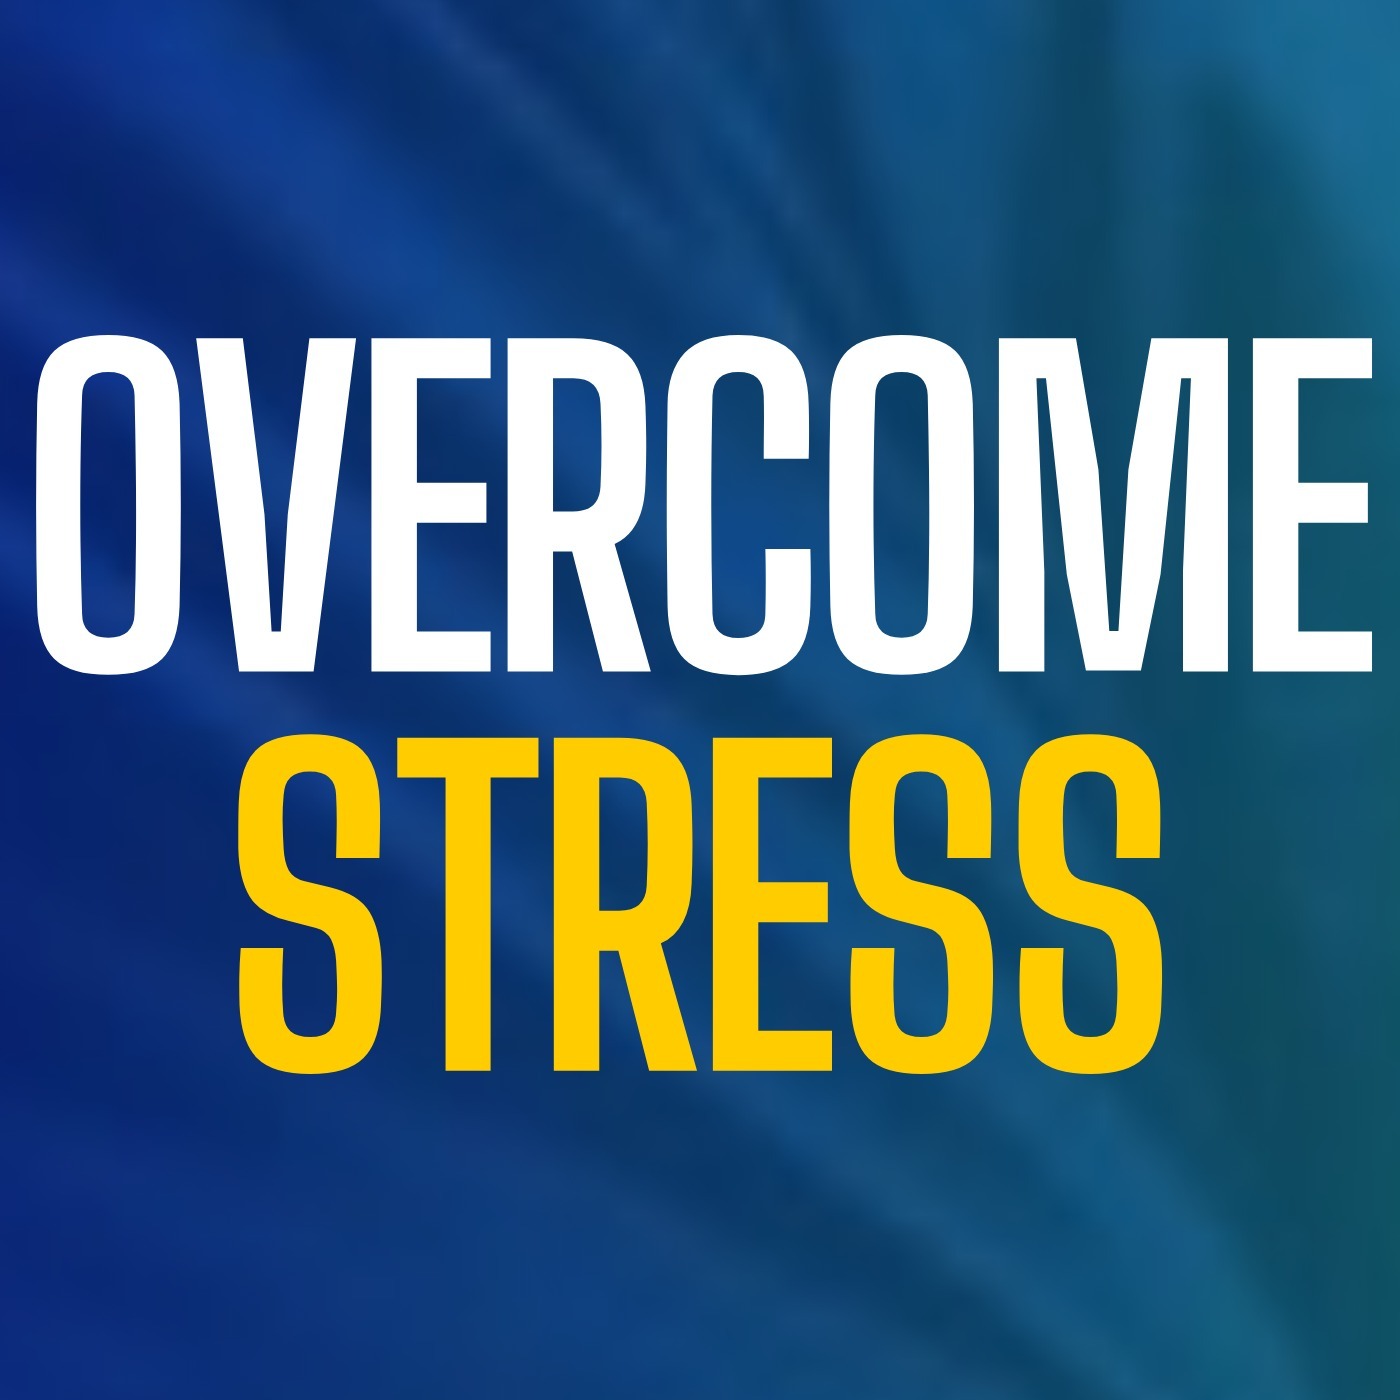 OVERCOME STRESS - Jordan Peterson Motivational Speech